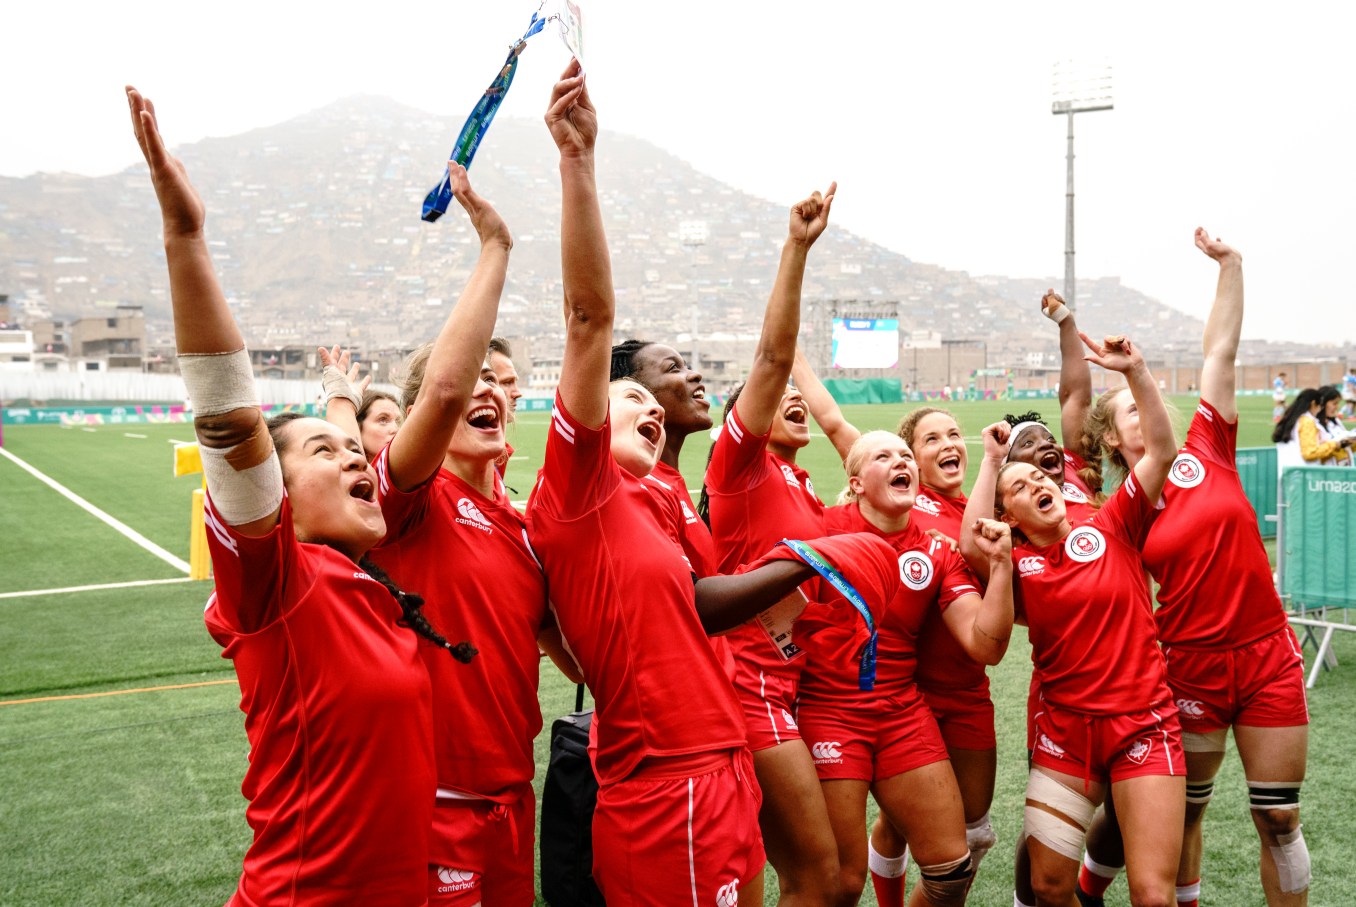 L'équipe canadienne de rugby à sept féminin célèbre après avoir remporté l'or aux Jeux panaméricains de Lima 2019, au Pérou, le 28 juillet 2019. Photo : David Jackson/COC